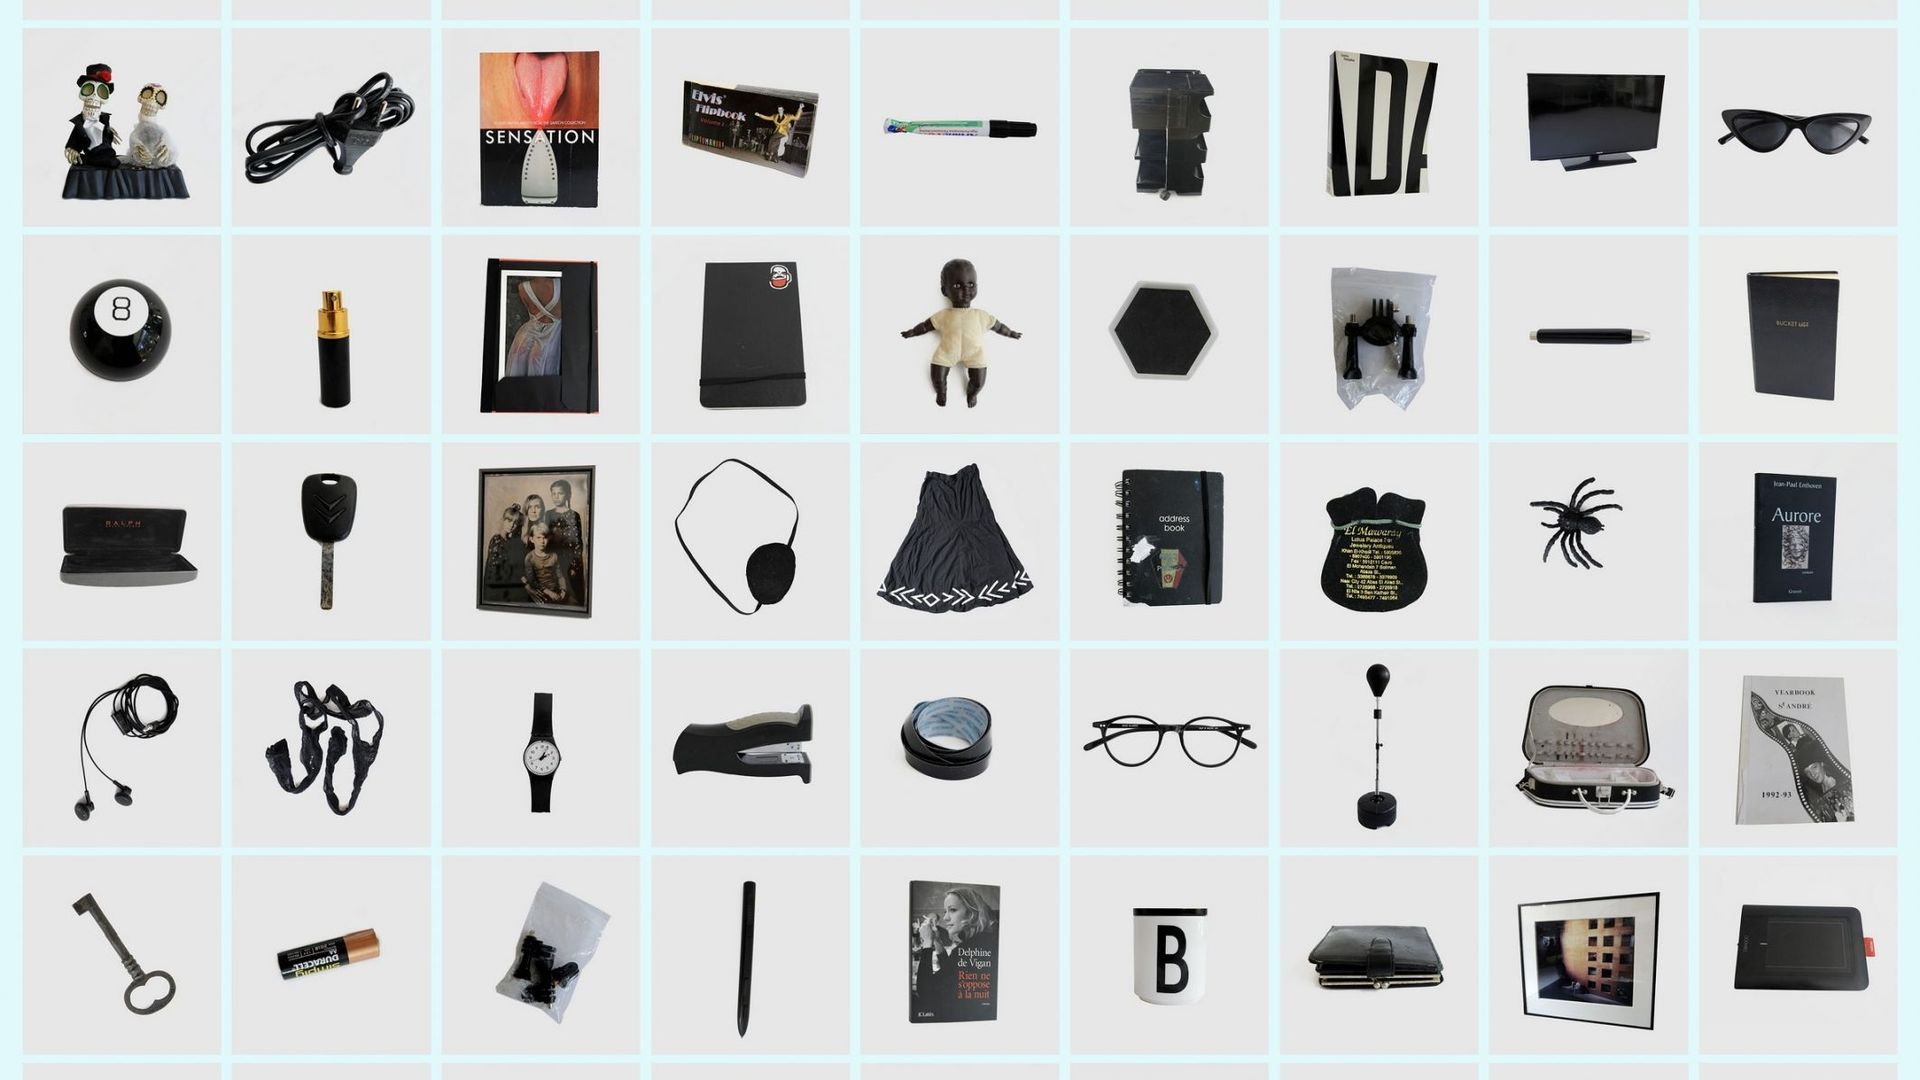 Barbara Iweins, Katalog, 2022 – objets par couleur Noir

